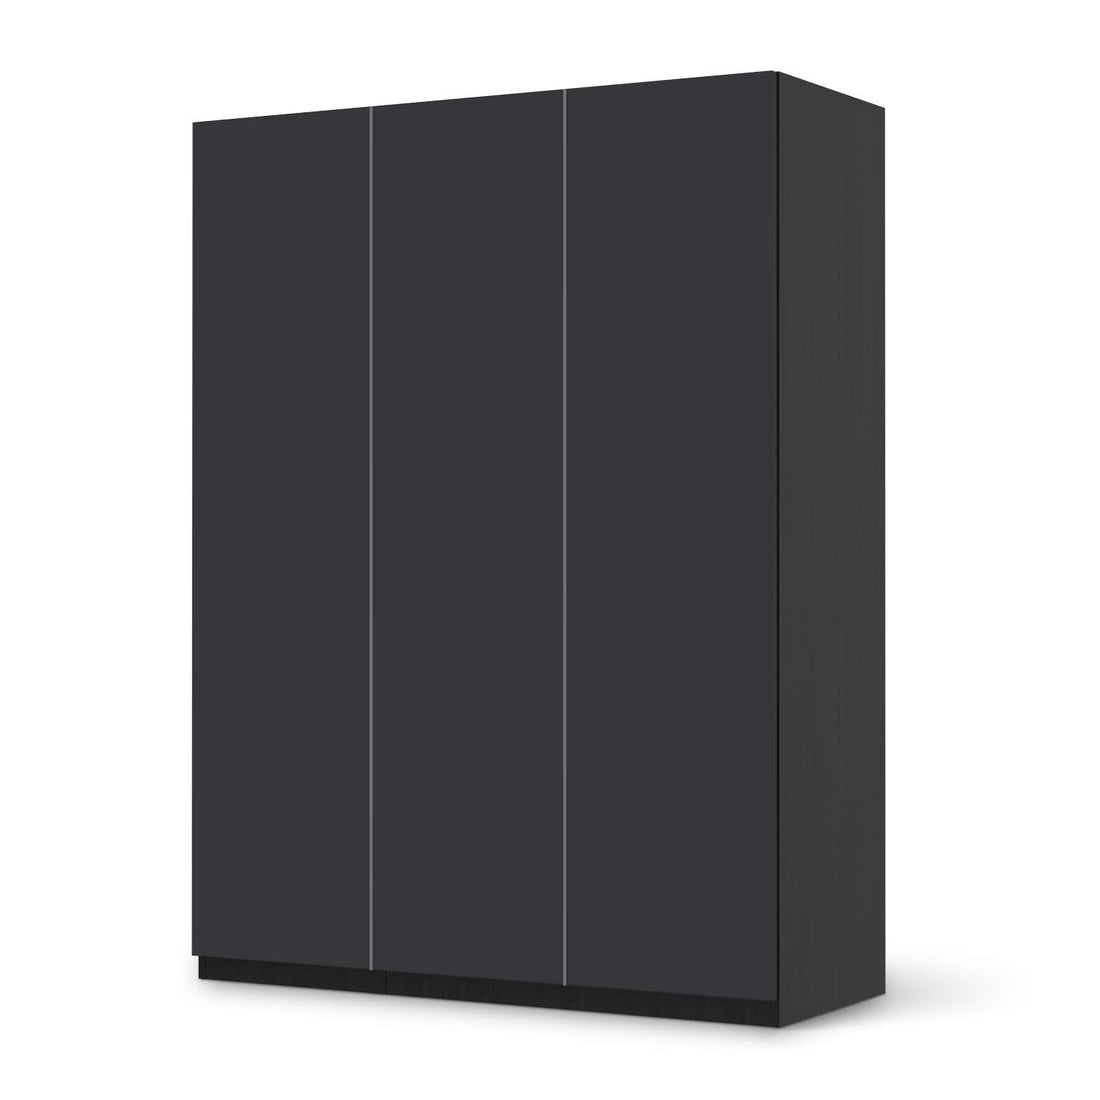 Folie für Möbel Grau Dark - IKEA Pax Schrank 201 cm Höhe - 3 Türen - schwarz